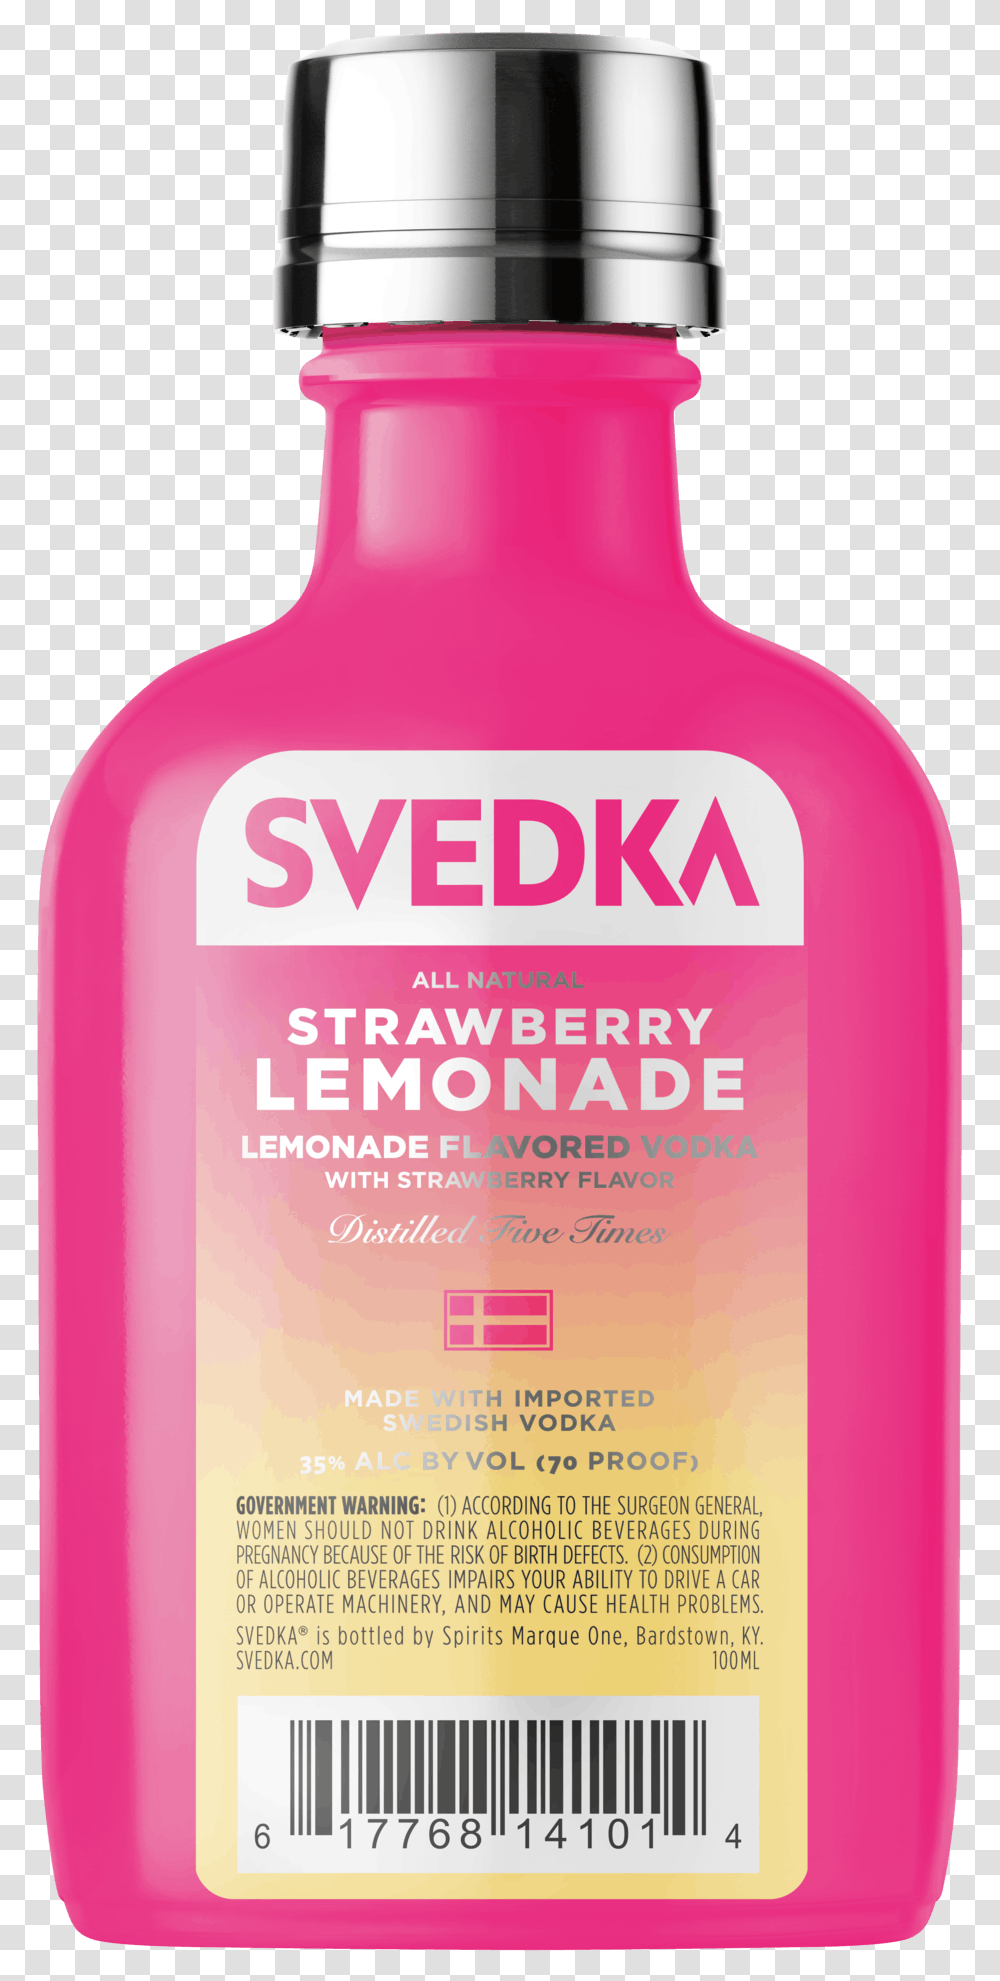 Svedka Strawberry Lemonade Vodka 100ml Bottle, Cosmetics, Lotion, Beverage, Drink Transparent Png